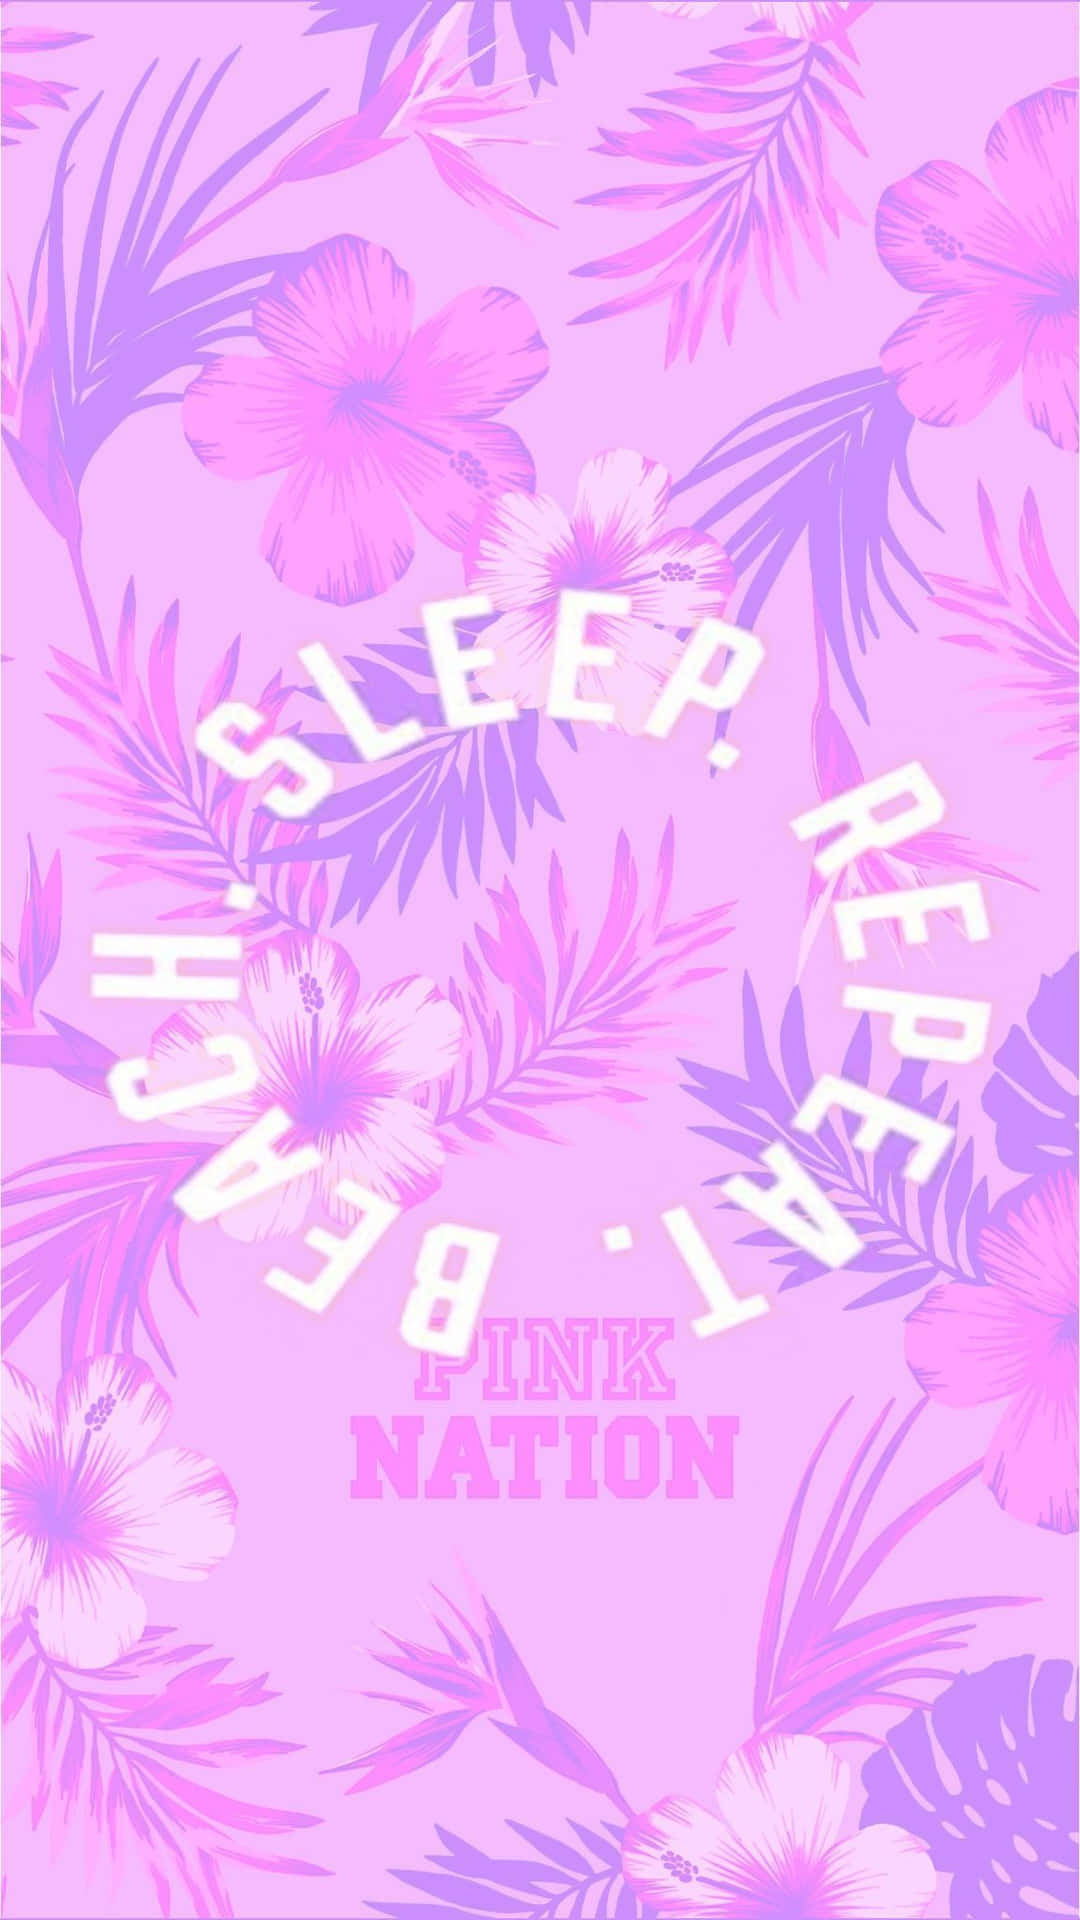 Sov,ät, Var En Nation - Rosa Wallpaper